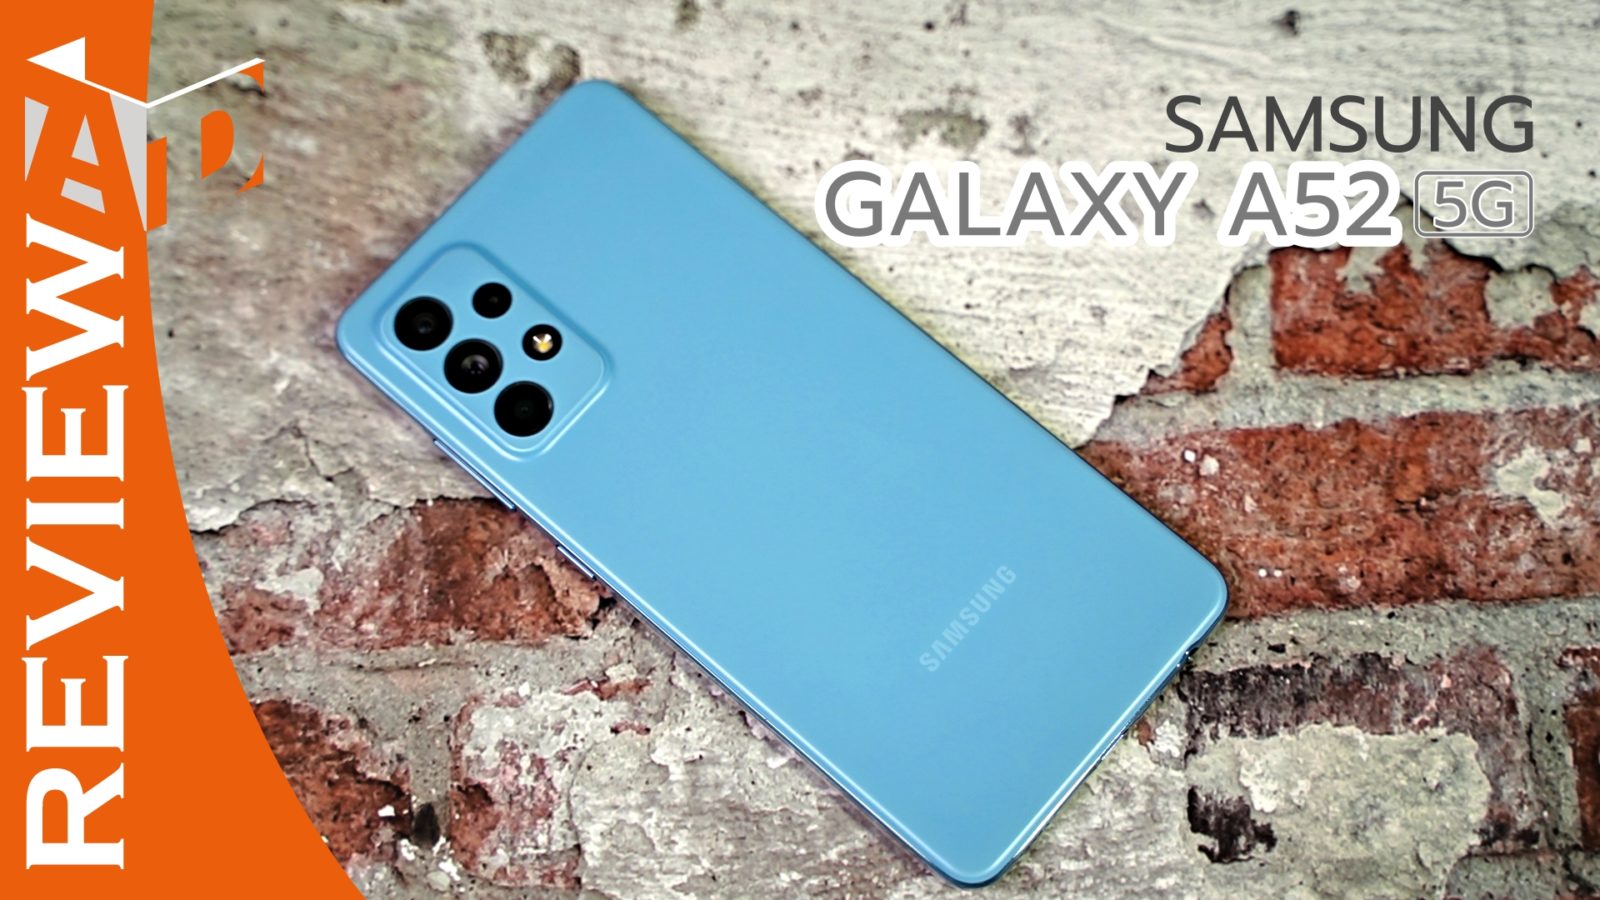 review Galaxy A52 5G | 5G | รีวิว Samsung Galaxy A52 5G ดีครบรอบด้าน จอสวย sAMOLED 120Hz กล้อง 64 ล้านคุณภาพสูงทั้งภาพนิ่งและวีดีโอ